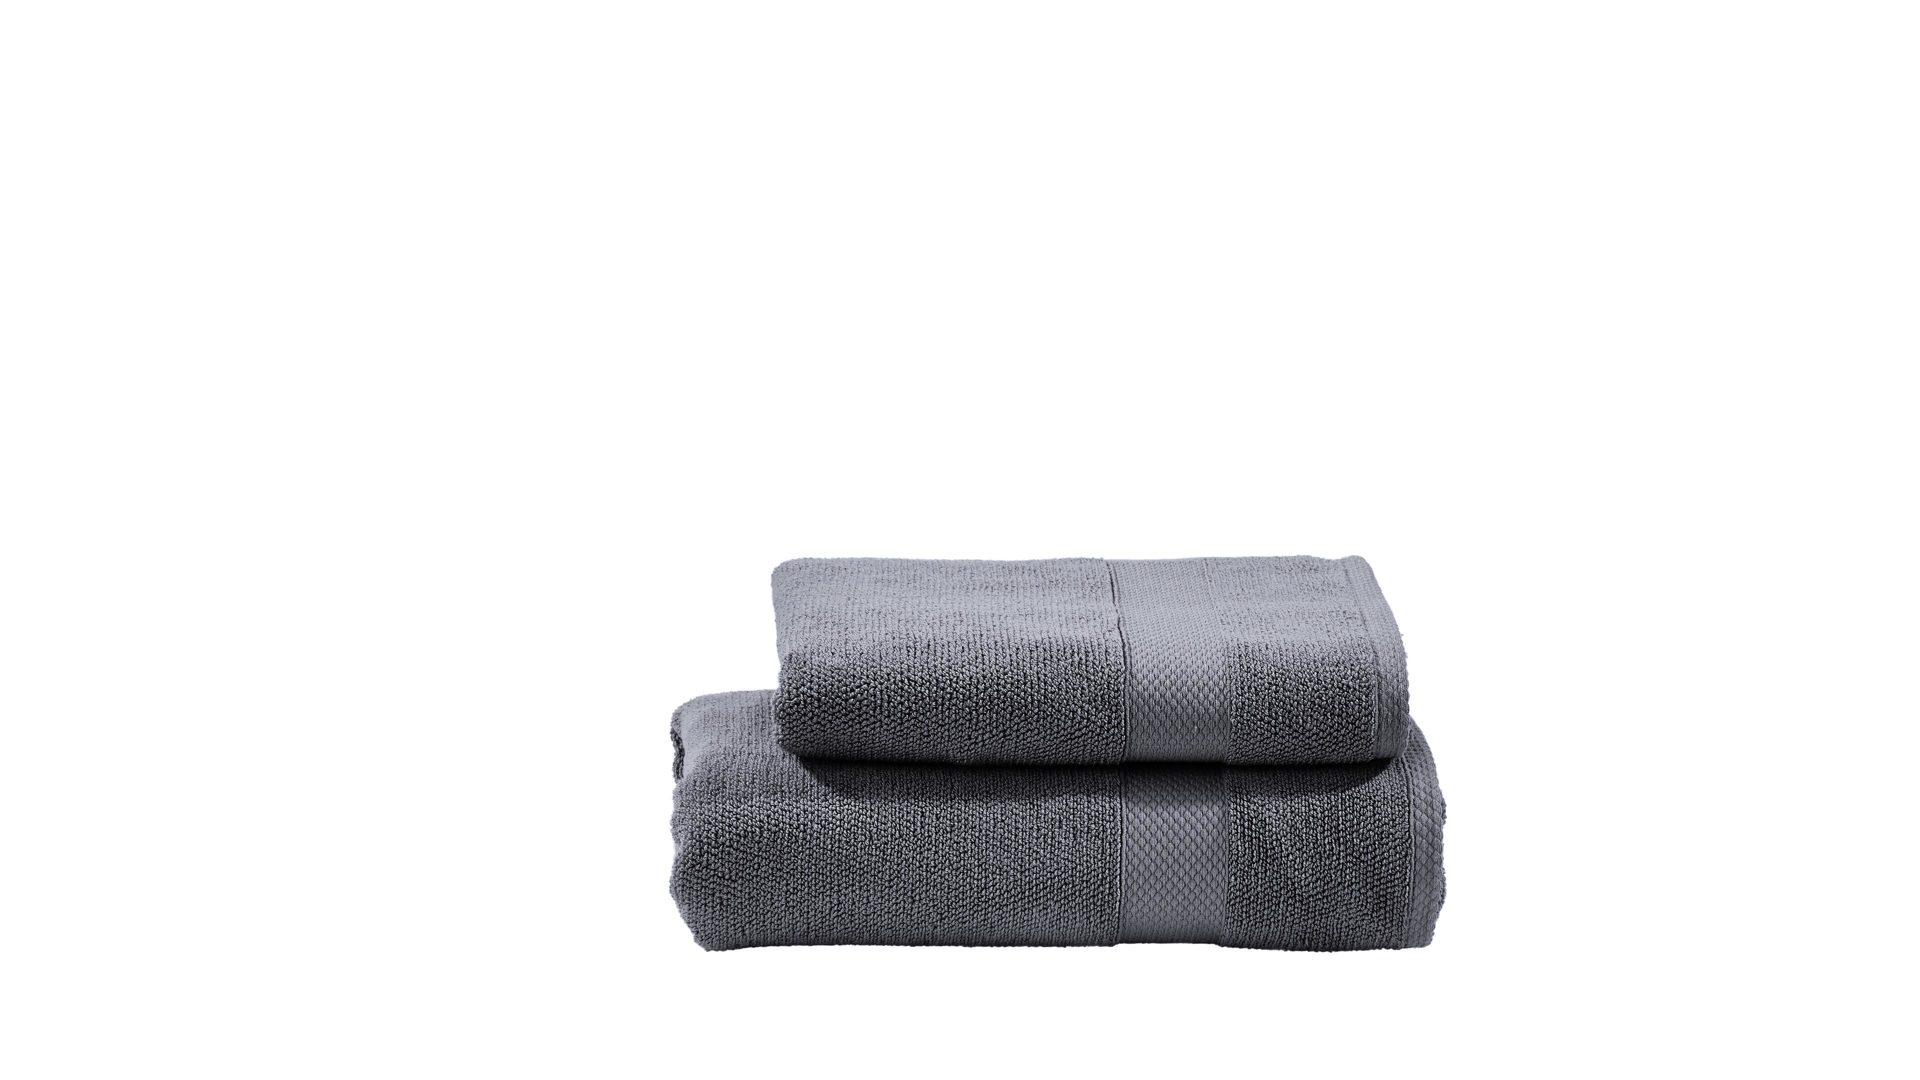 Handtuch-Set Done® by karabel home company aus Stoff in Anthrazit DONE® Handtuch-Set Deluxe - exklusive Heimtextilien anthrazitfarbene Baumwolle – zweiteilig